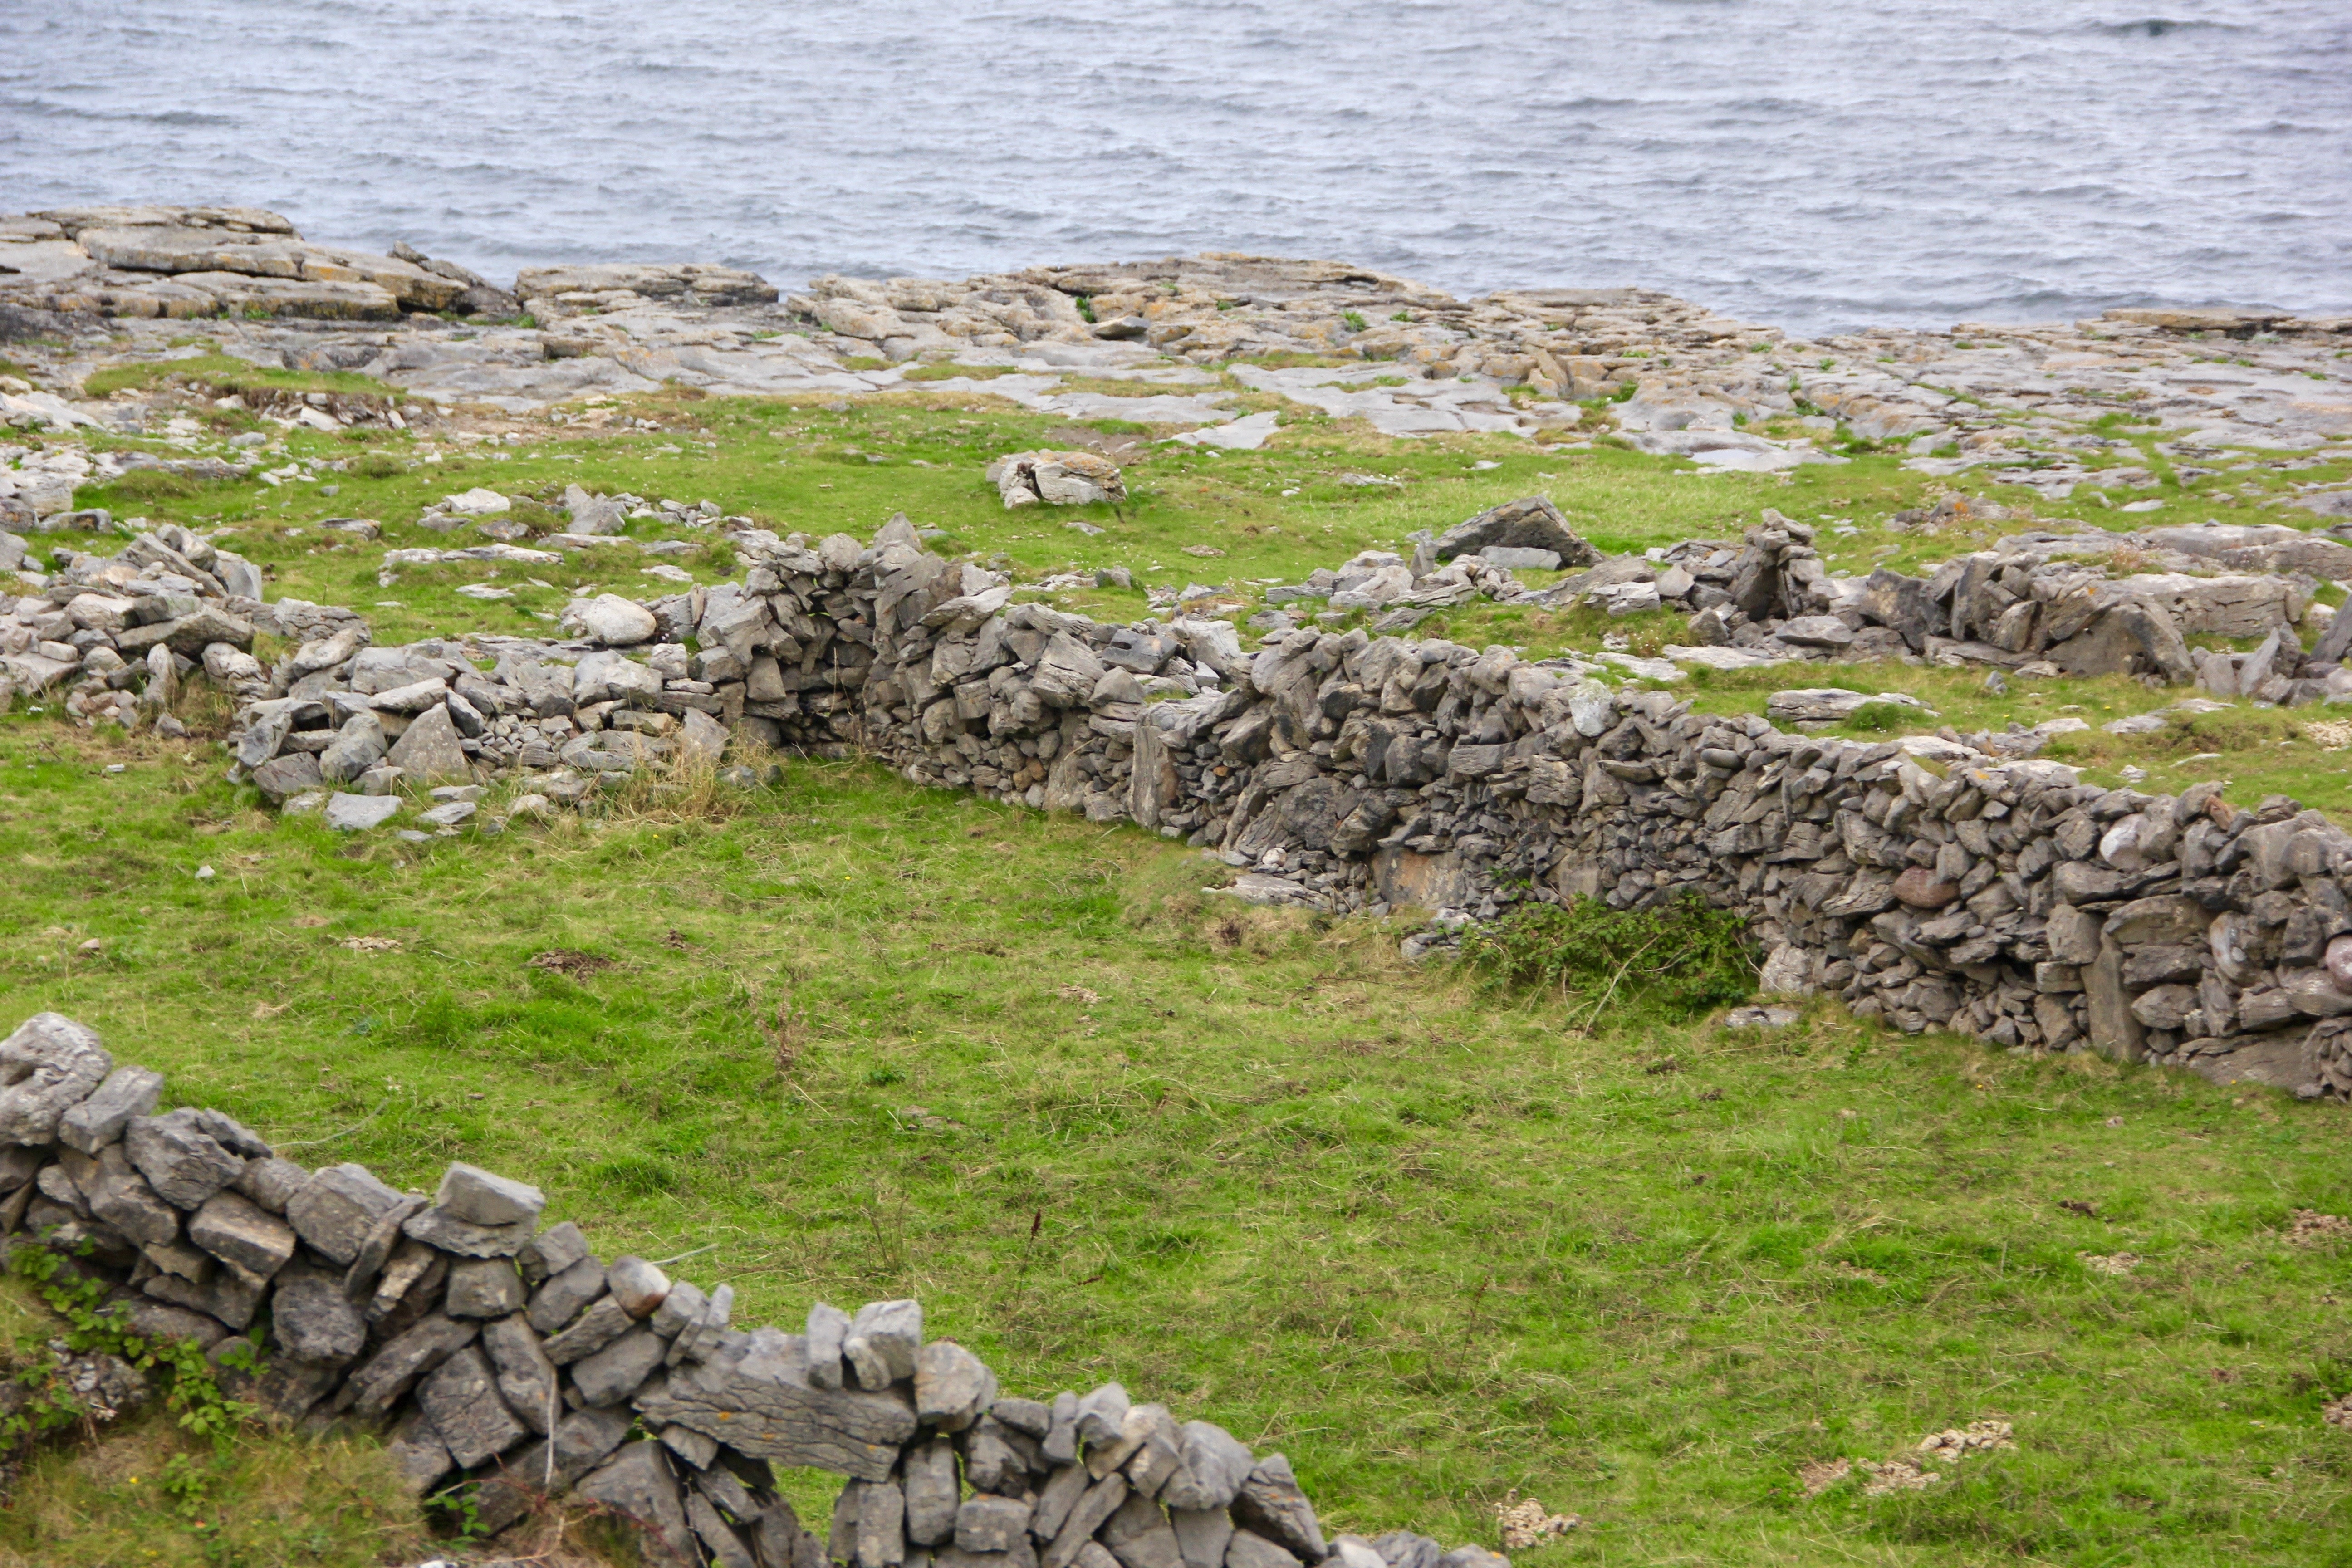 Ireland, Stone, Wall, Stone Wall, Irish, no people, rock - object